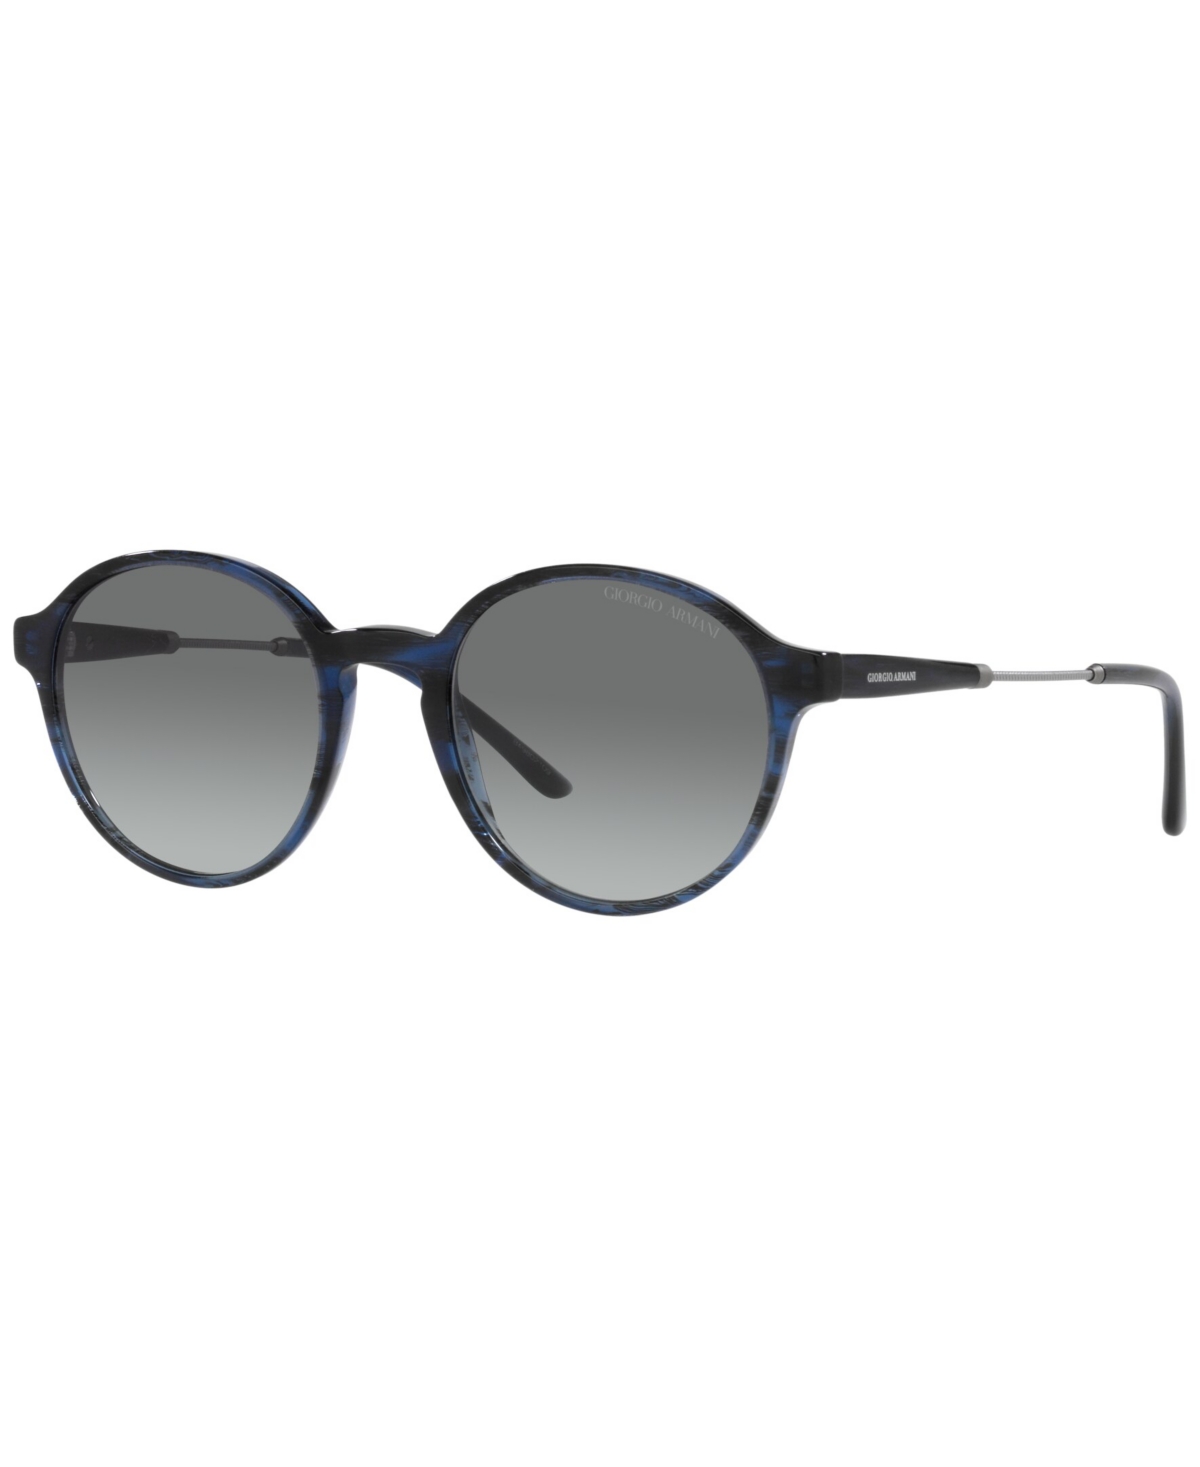 Giorgio Armani Men's Sunglasses, Ar8160 51 In Striped Blue